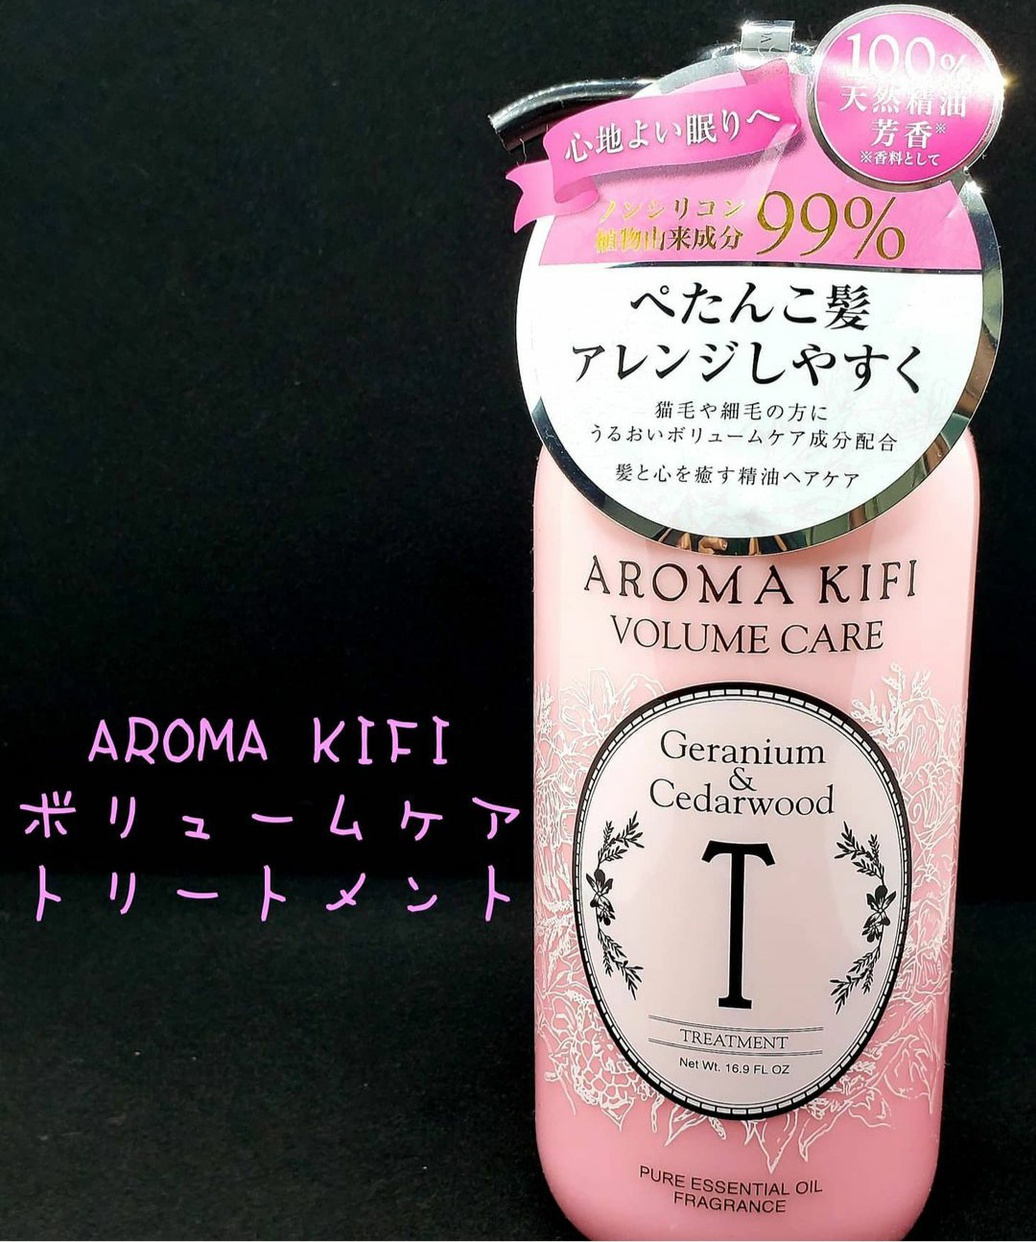 AROMA KIFI(アロマキフィ) ボリュームケア トリートメントの良い点・メリットに関するせあらさんの口コミ画像1